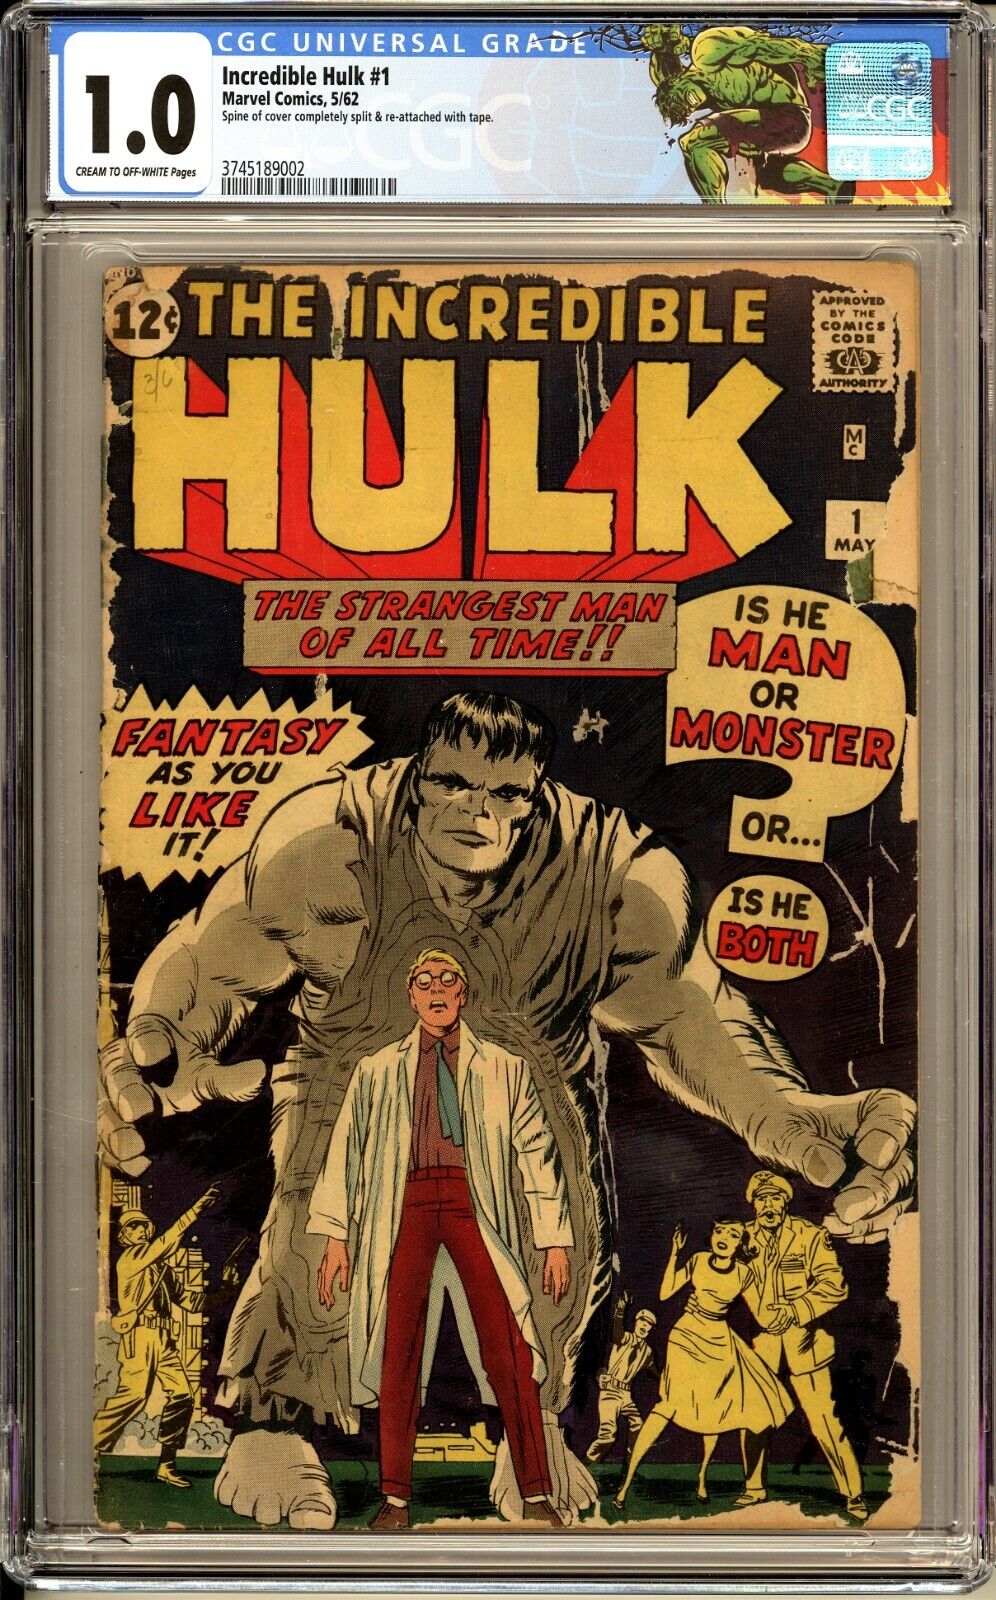 Incredible Hulk #1 CGC 1.0 1st app. and origin Hulk 1962